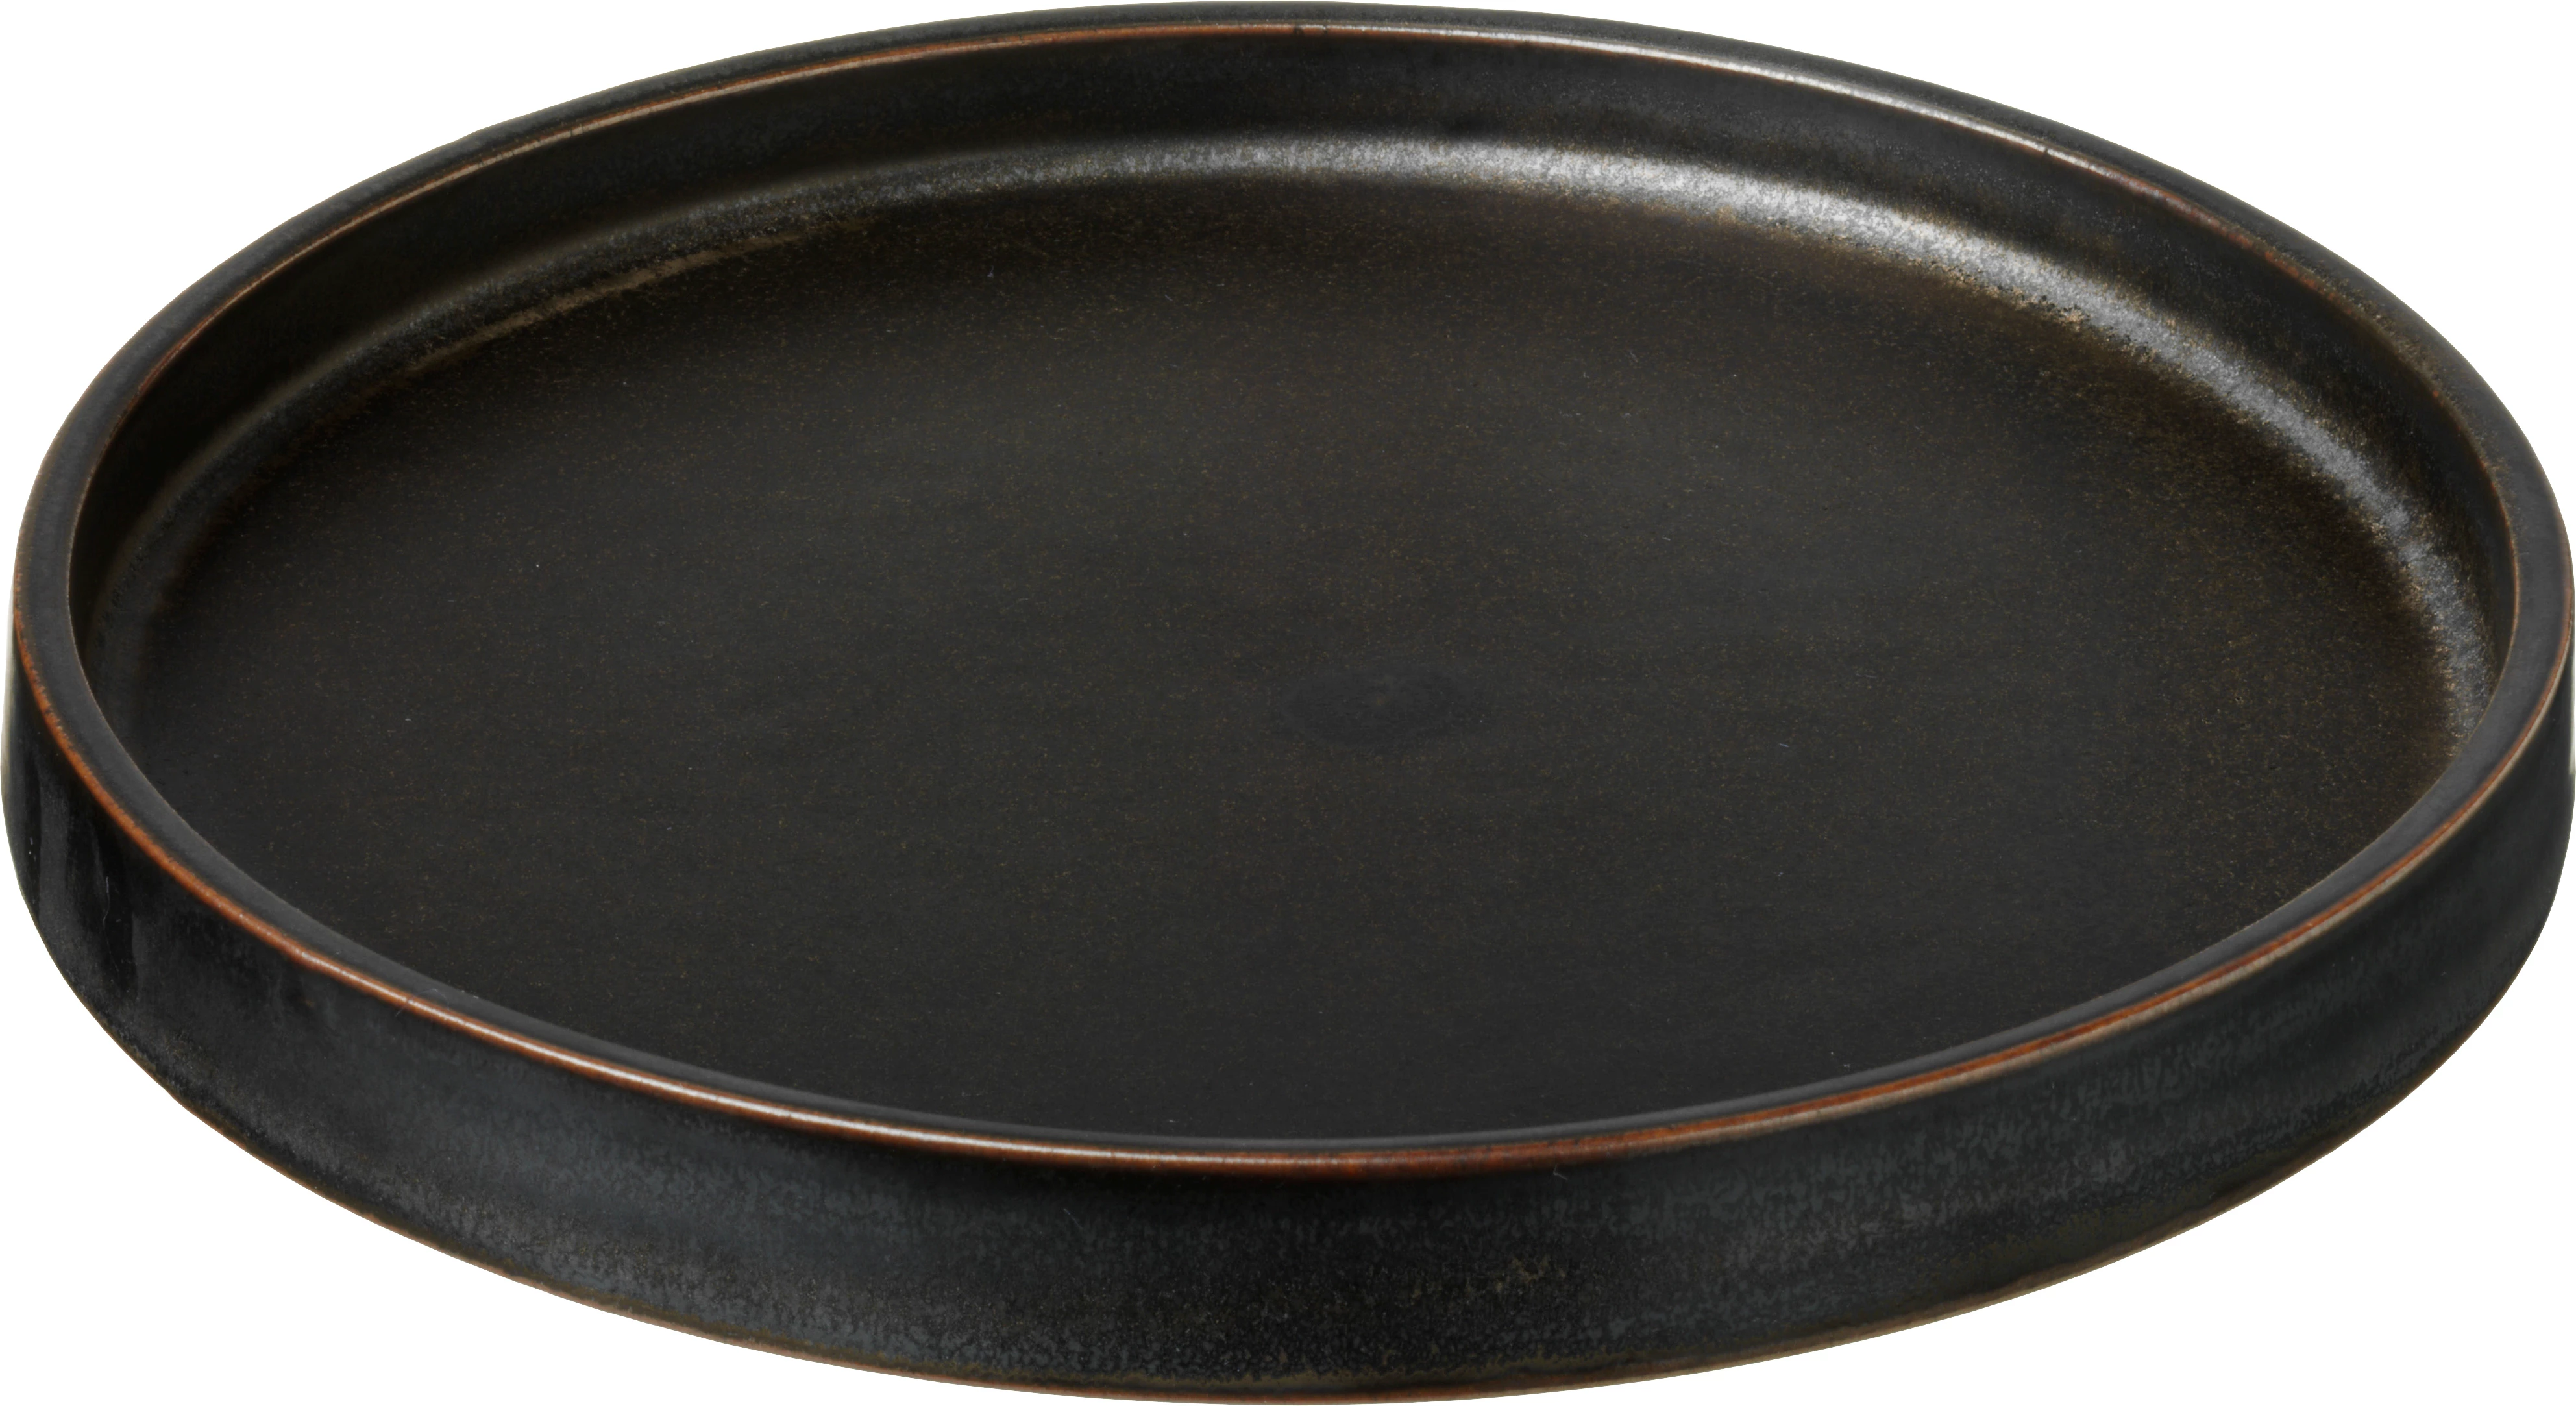 Savannah flad tallerken uden fane, brun, ø16 cm